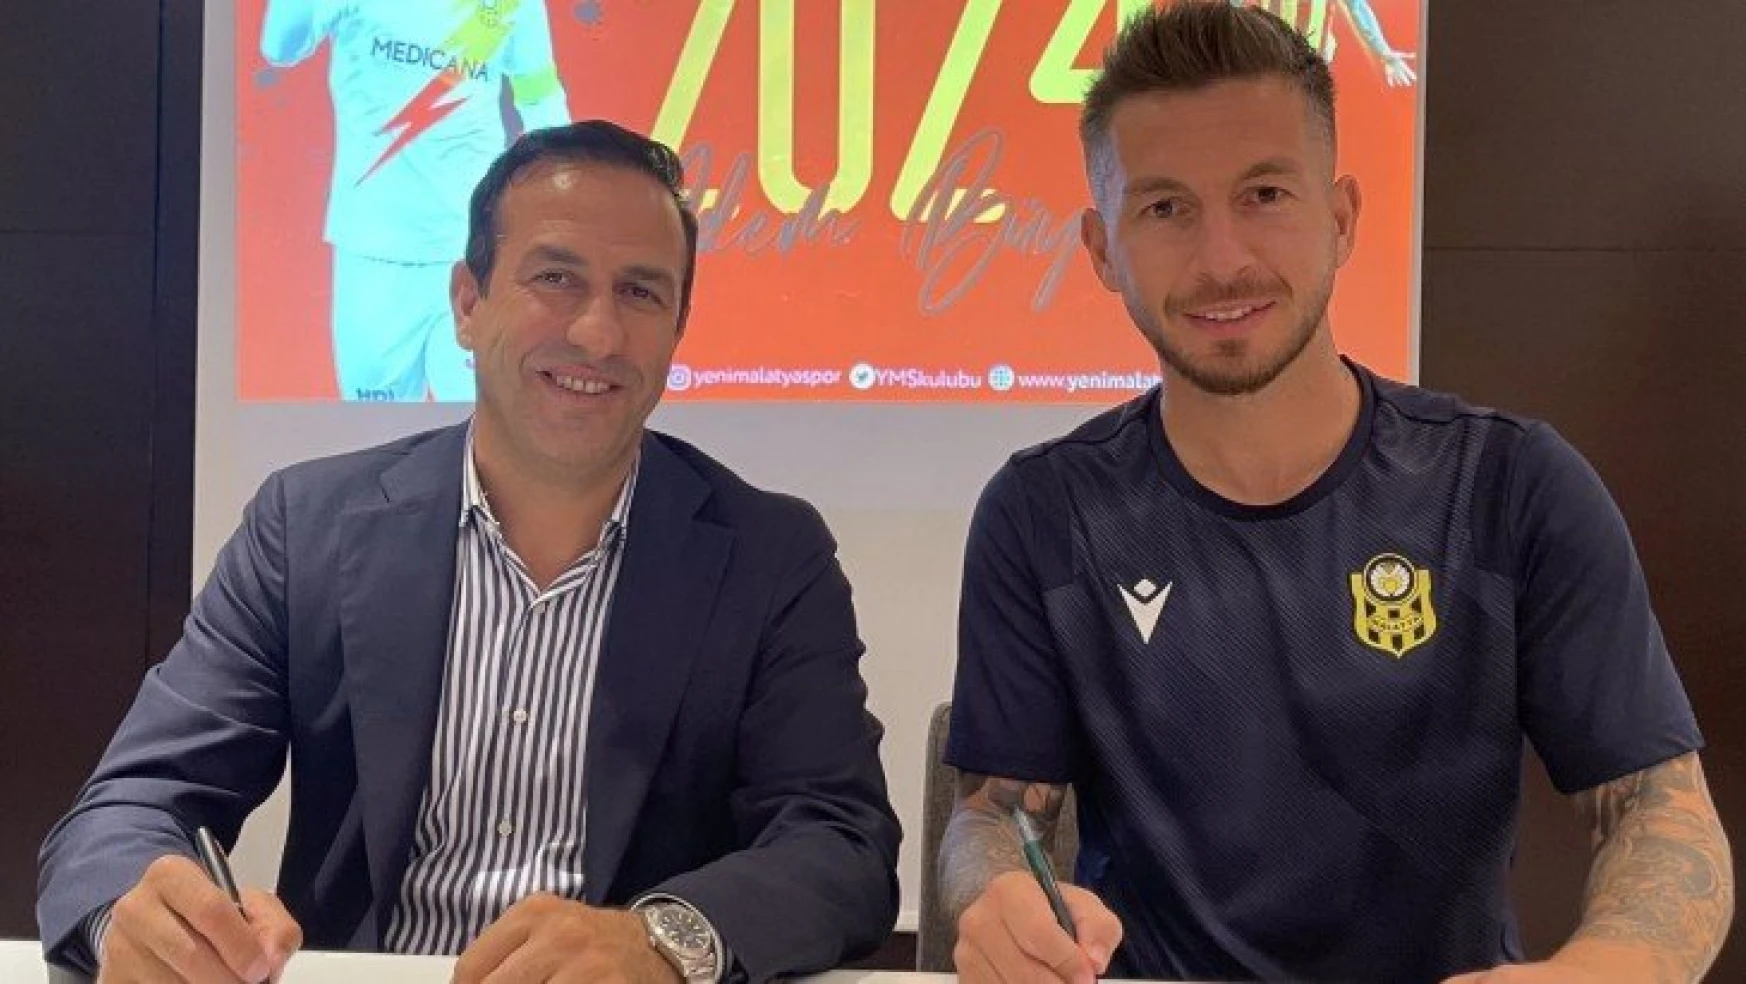 Yeni Malatyaspor Adem Büyük ile sözleşme uzattı